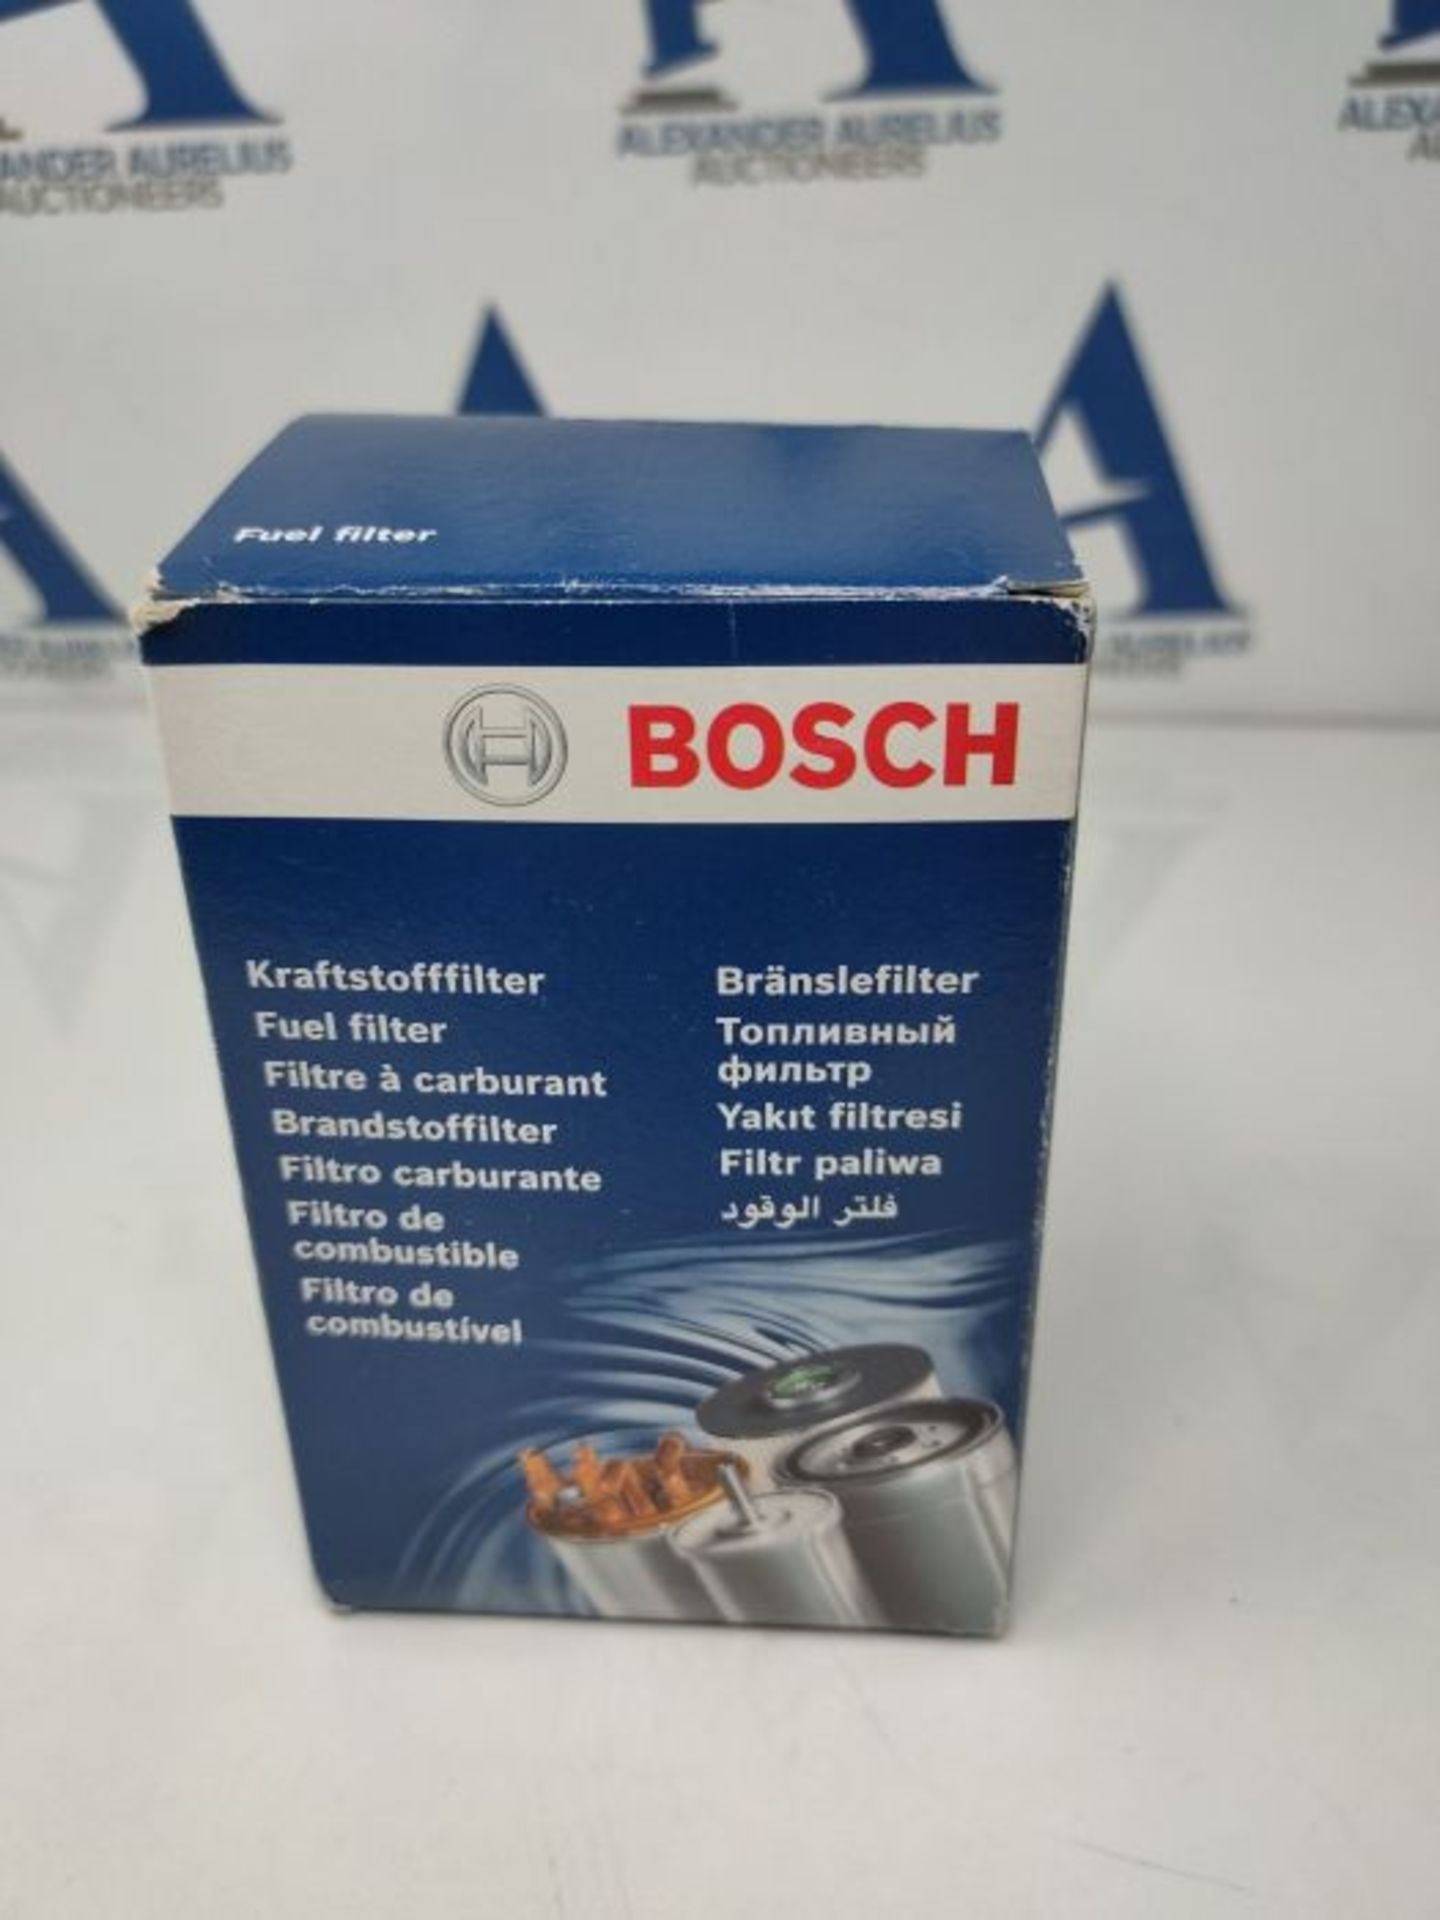 Bosch N0013 - Diesel Filter Car - Image 2 of 6